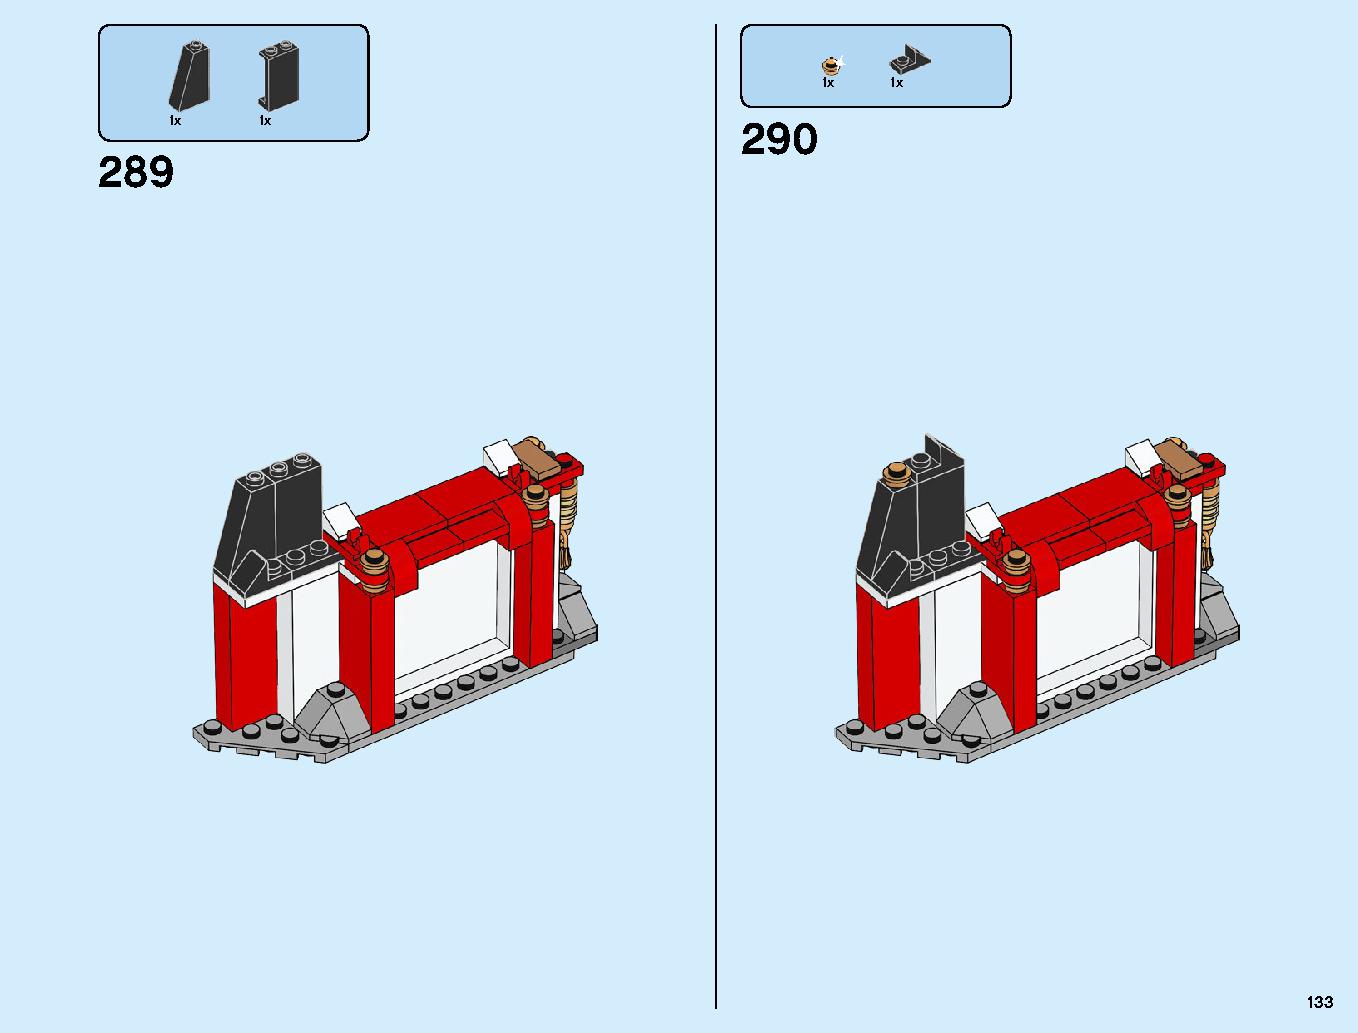 ニンジャ道場 70670 レゴの商品情報 レゴの説明書・組立方法 133 page